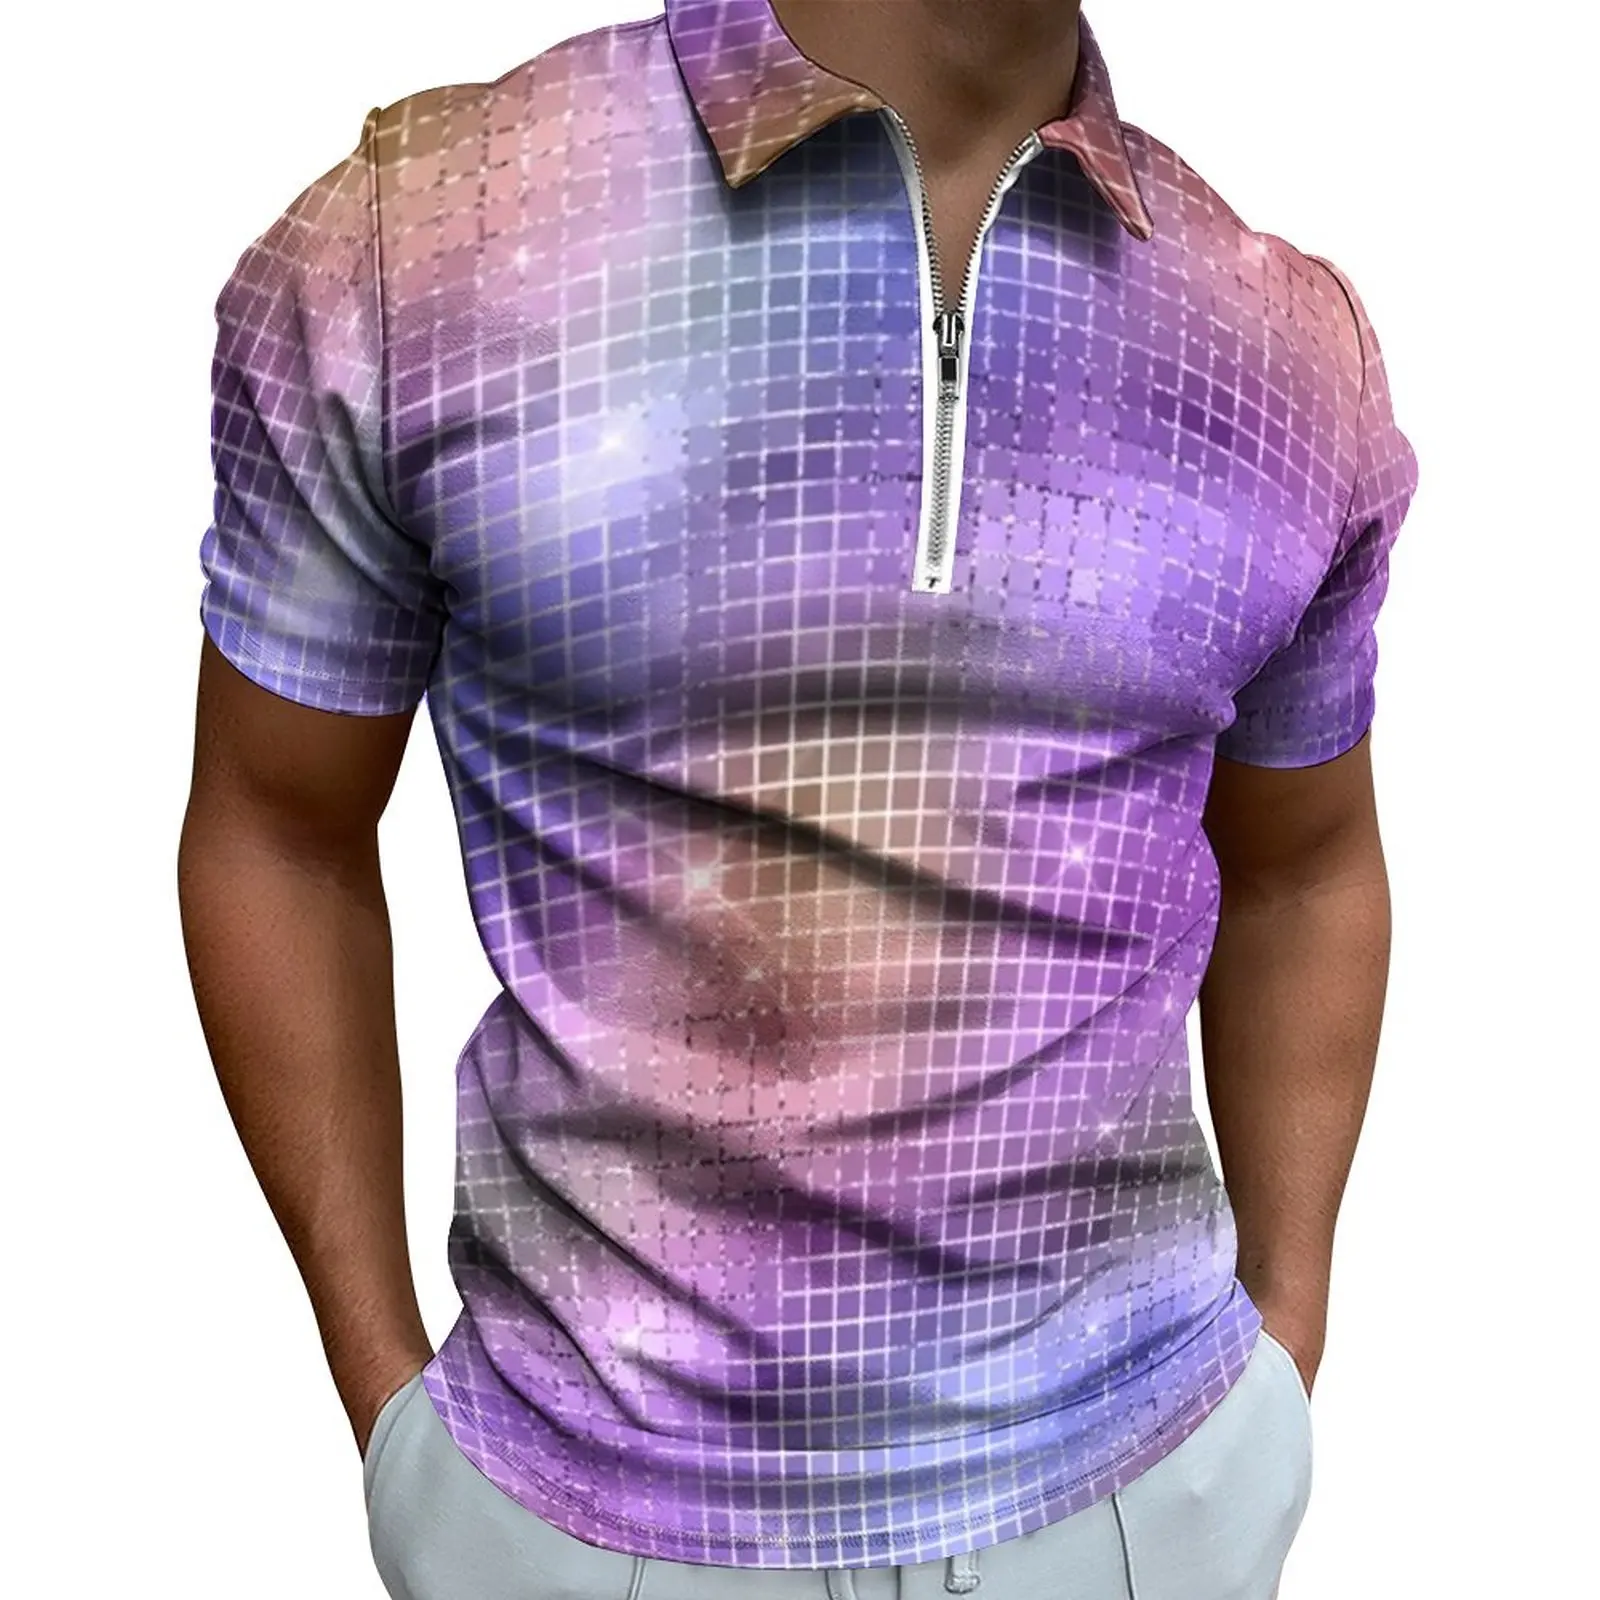 

Рубашка-поло мужская с принтом радужного диско-мяча, Повседневная пляжная уличная одежда с зеркальными квадратами, топ оверсайз с коротким рукавом и графическим принтом